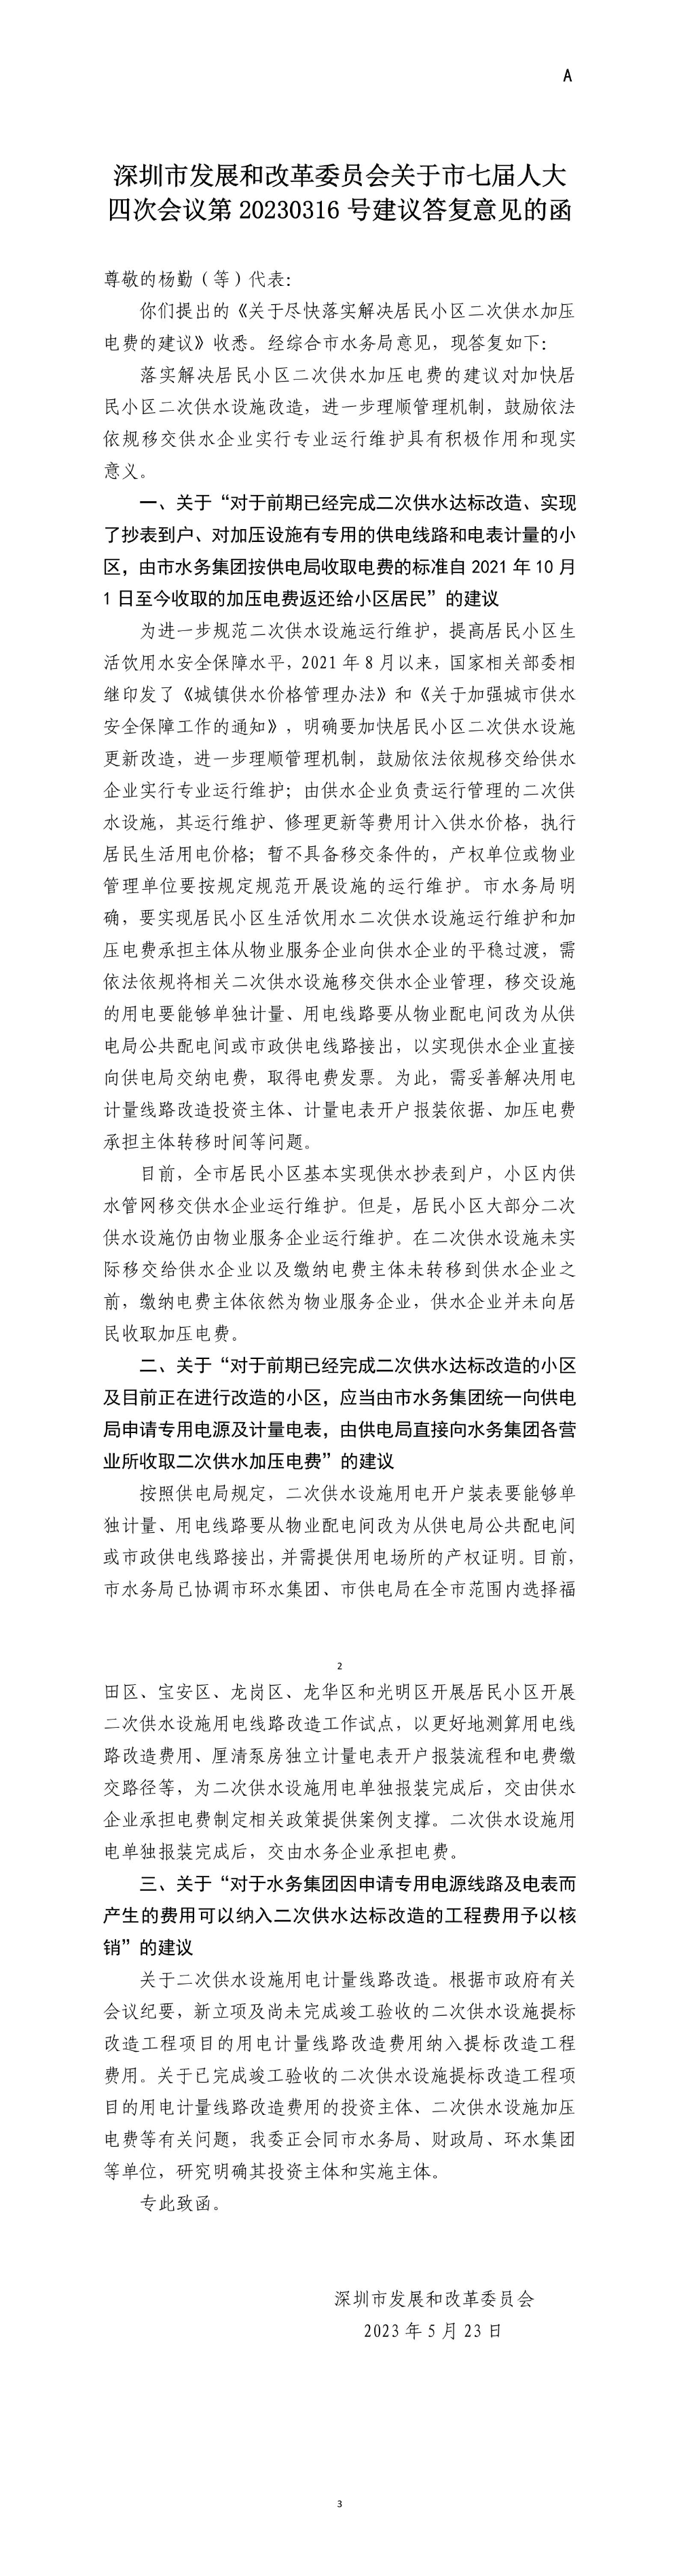 深圳市发展和改革委员会关于市七届人大四次会议第20230316号建议答复意见的函.jpg